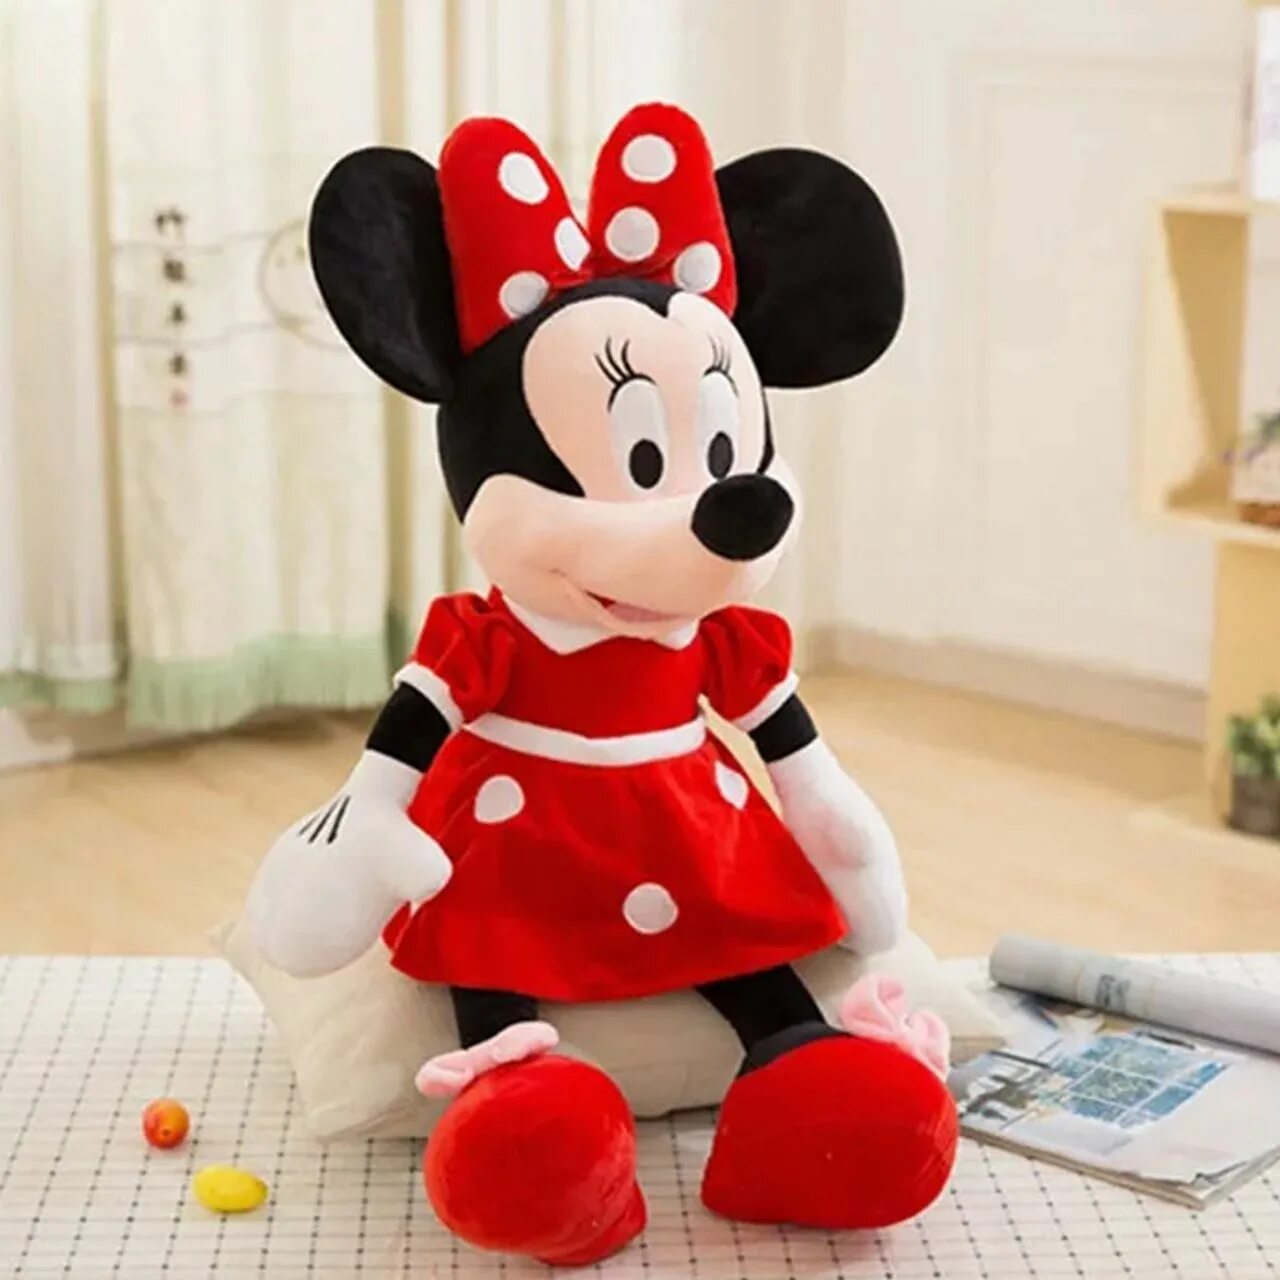 Фф минни. Игрушка Минни Маус Дисней. Микки Маус игрушка мягкая большая. Мягкая игрушка Minnie Mouse. Микки Маус мягкая игрушка 90см.